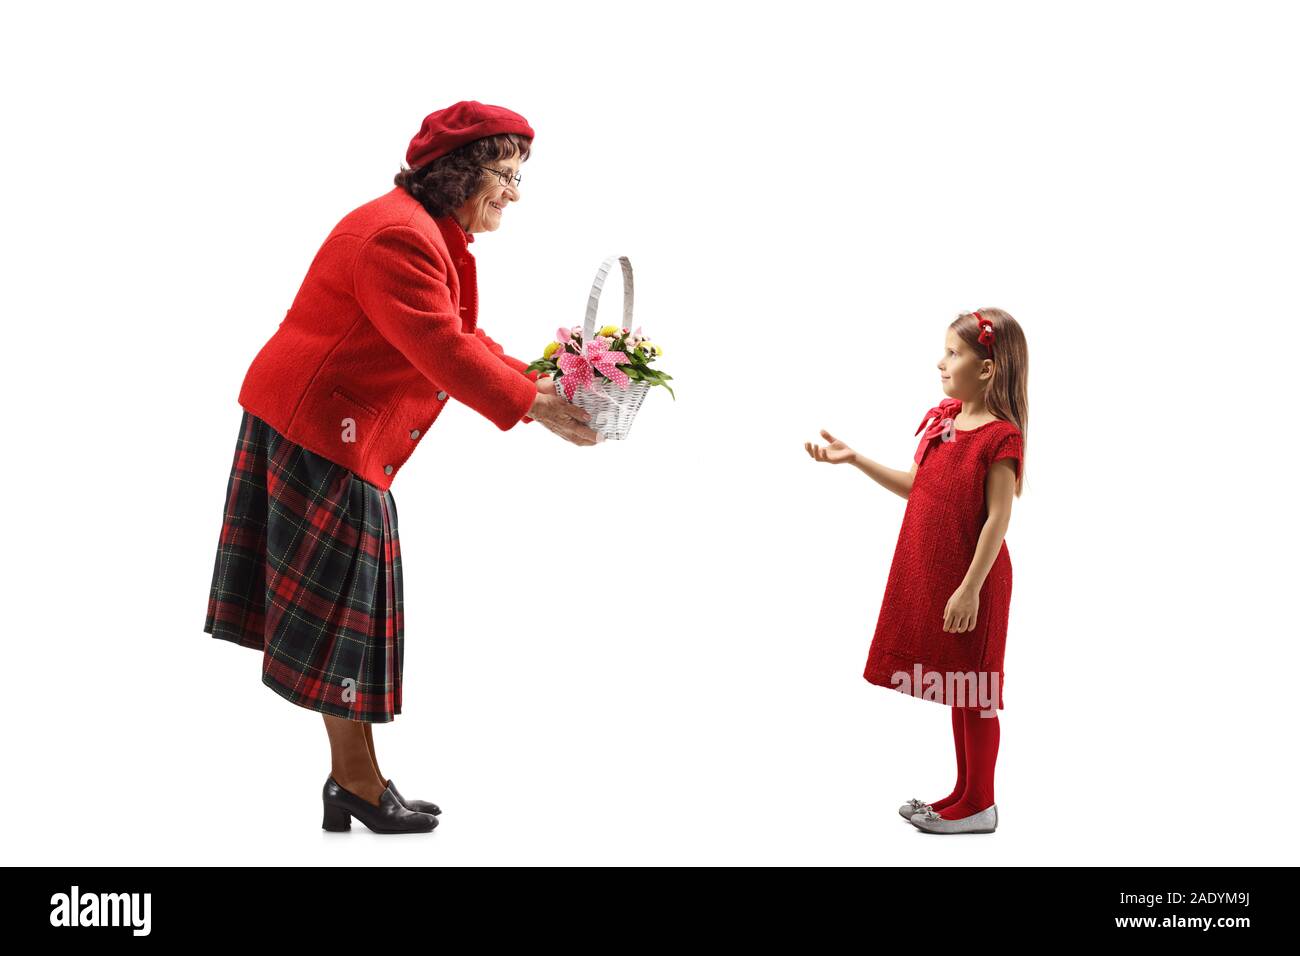 Profil de pleine longueur tourné d'une femme âgée en donnant un panier de fleurs à une petite fille isolée sur fond blanc Banque D'Images